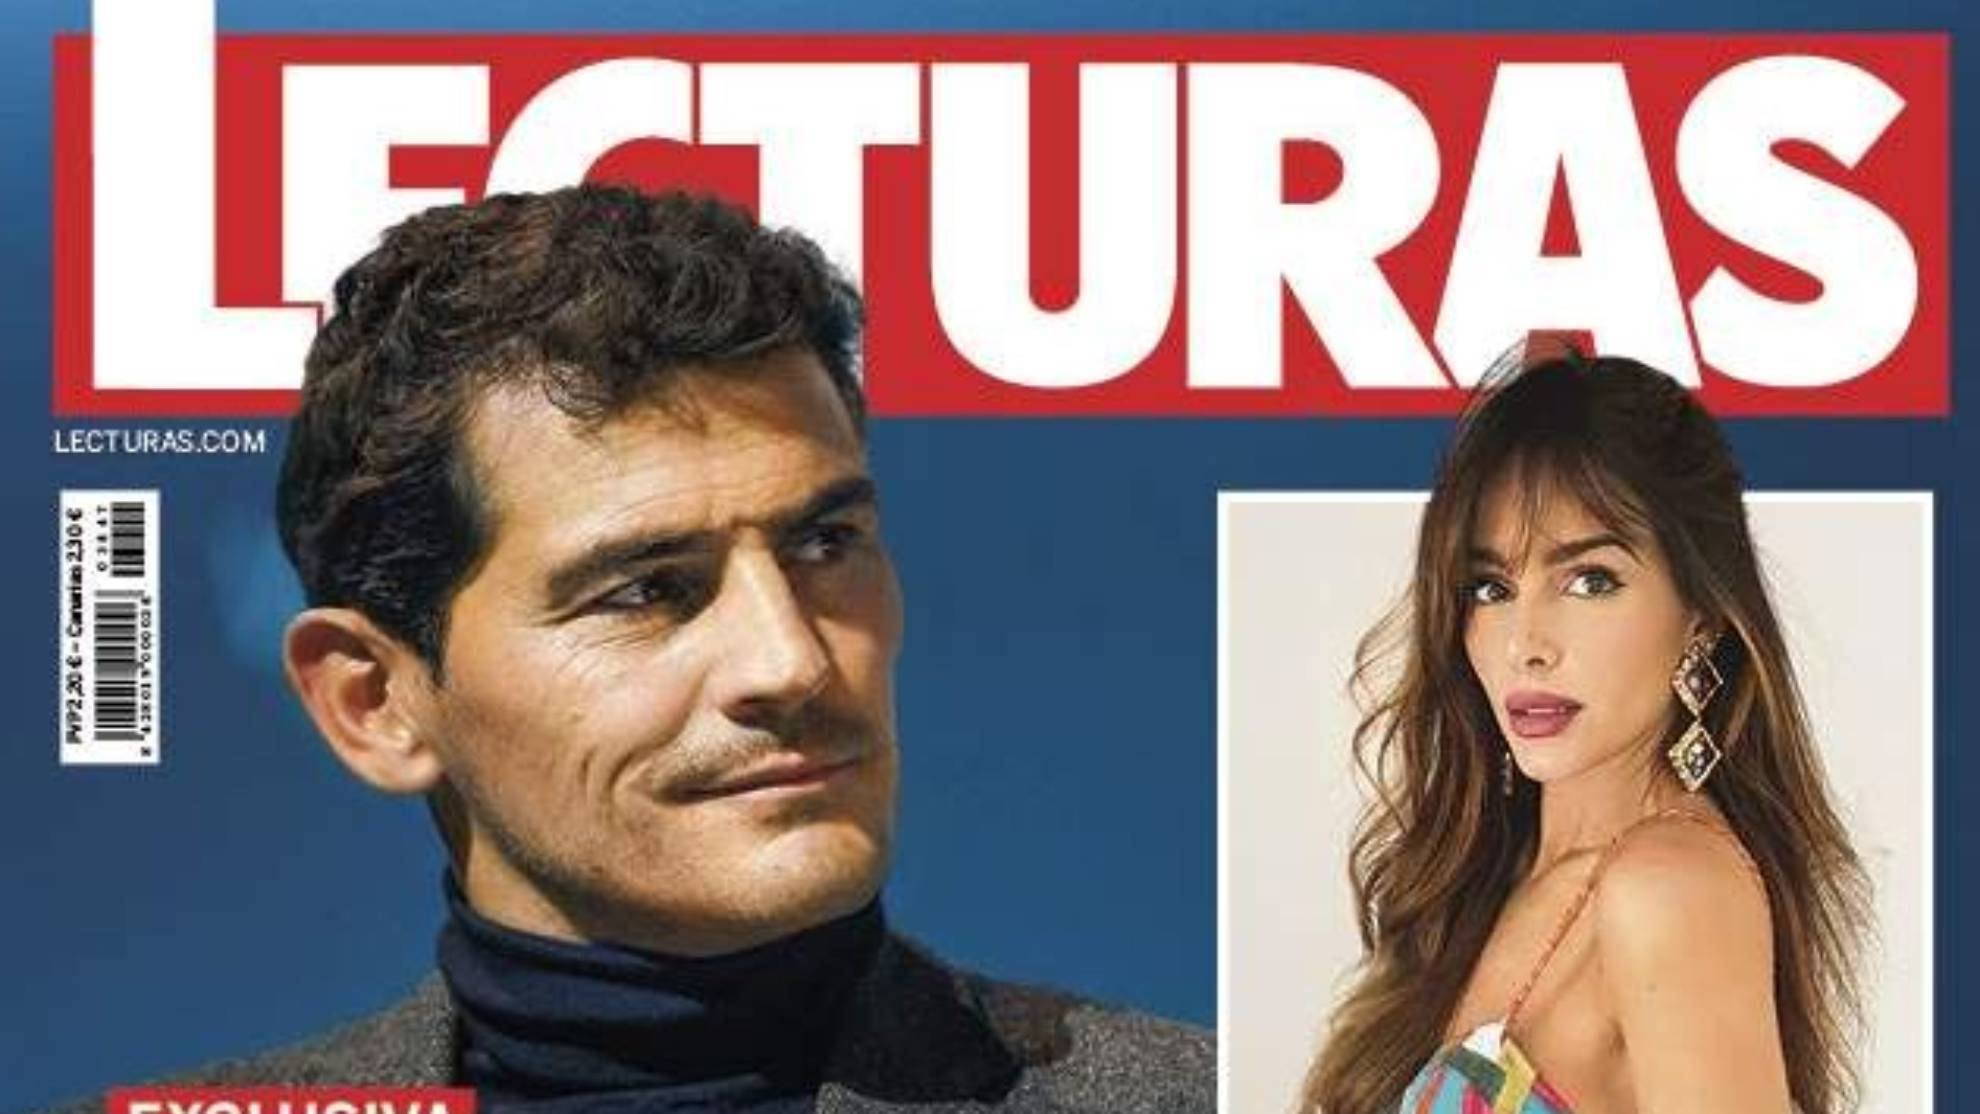 La contundente reacción de Iker Casillas ante su "relación secreta" con la 'influencer' Rocío Osorno